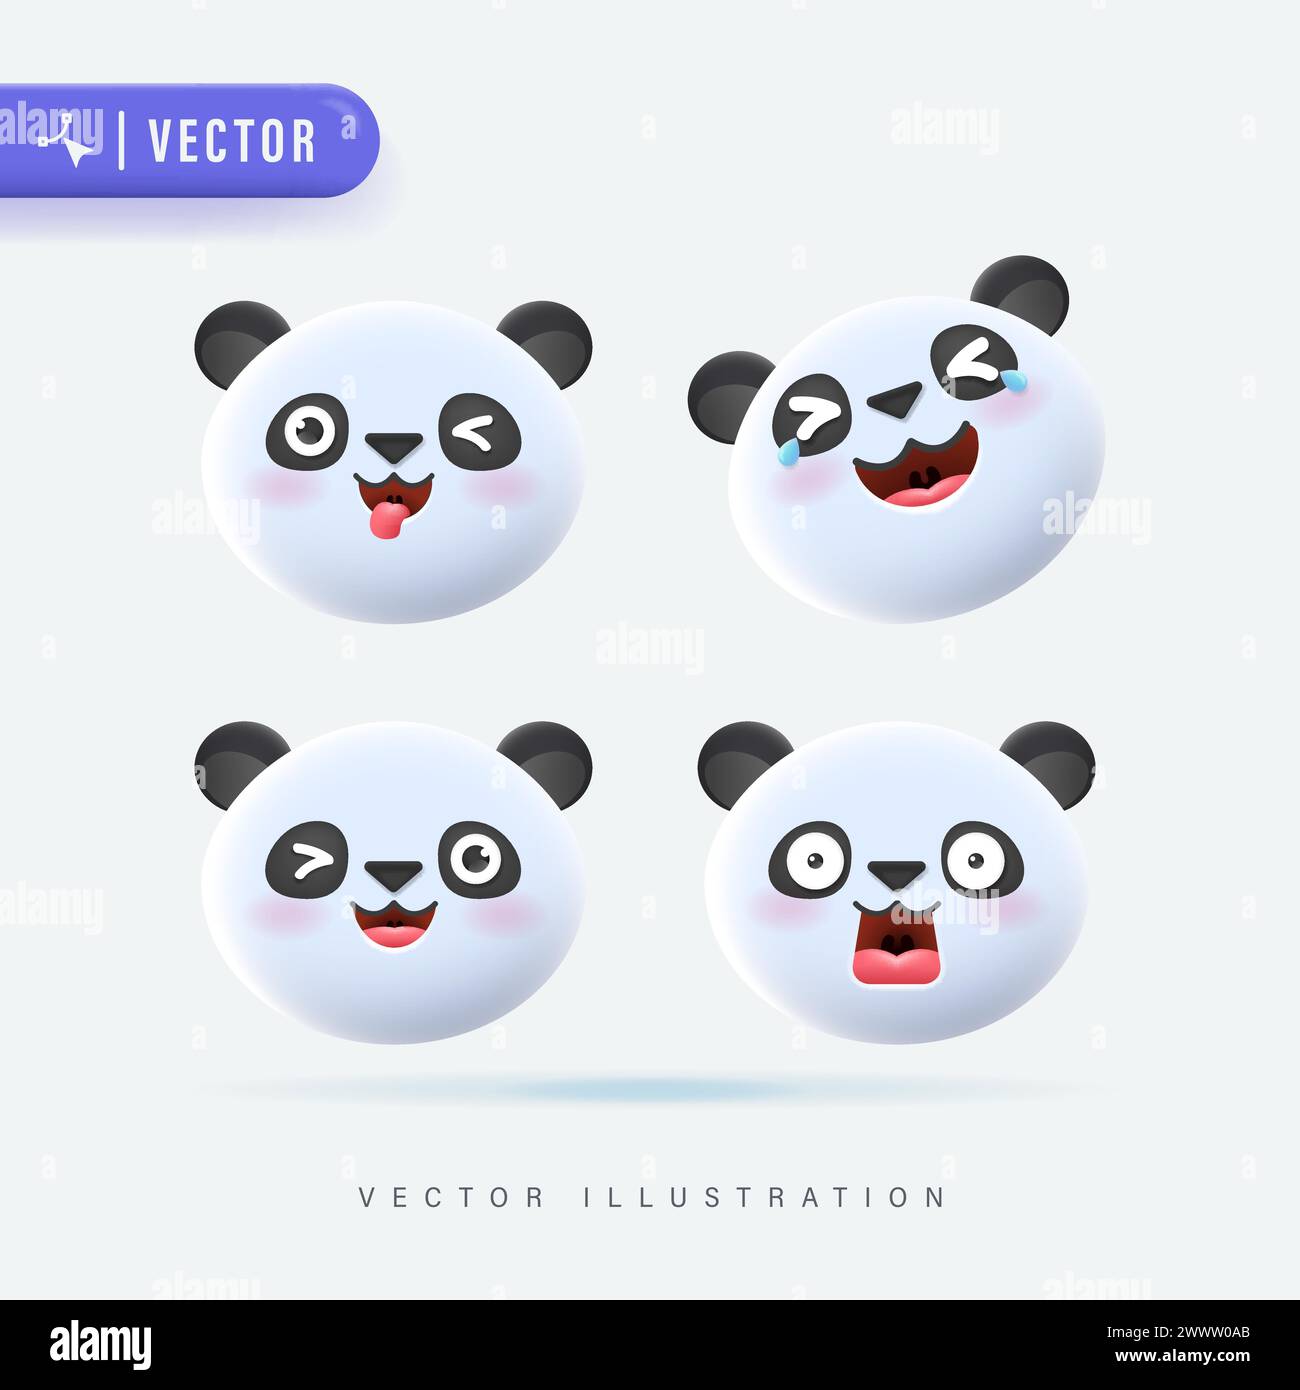 Set vettoriale realistico 3D di simpatiche icone di cartoni animati Little Panda con varie espressioni facciali isolate su sfondo bianco. Panda Cub F semplice e minimalista Illustrazione Vettoriale